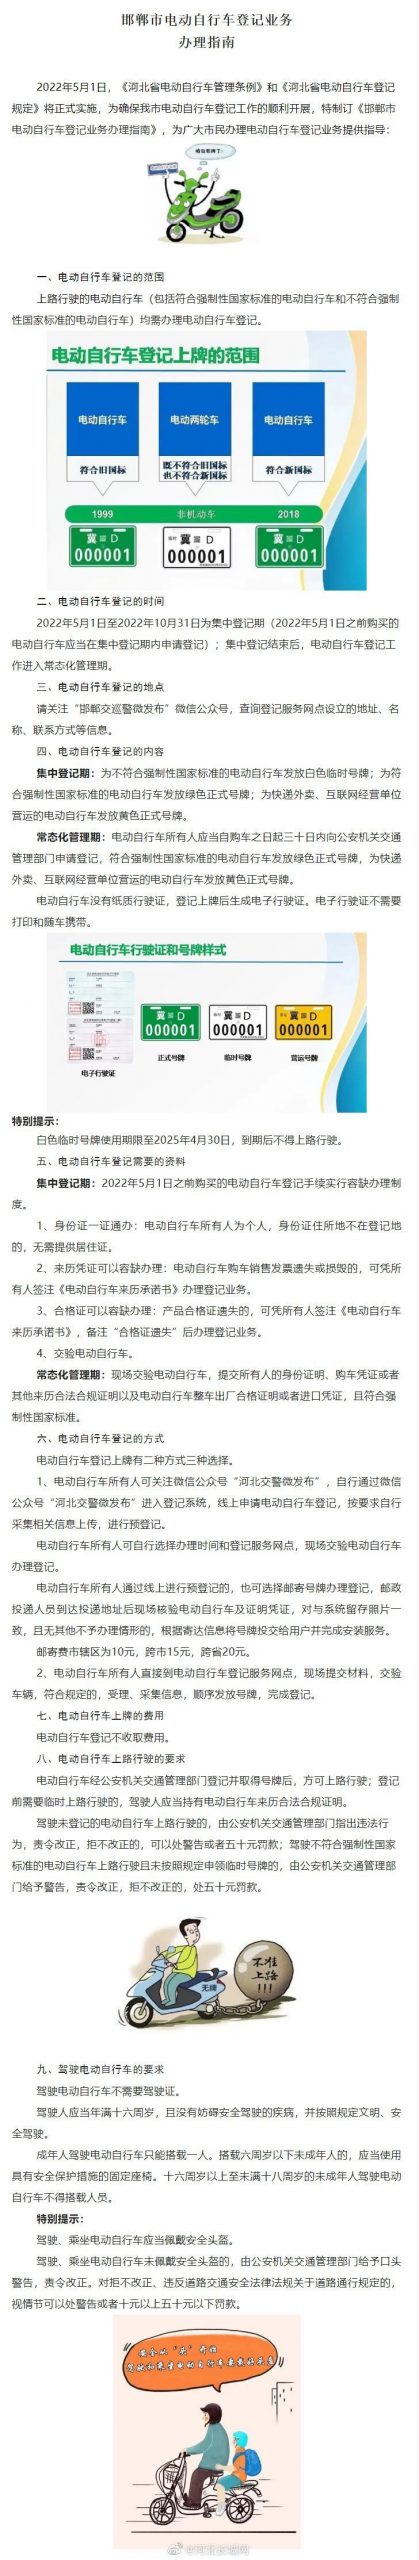 邯郸市电动自行车登记业务办理指南